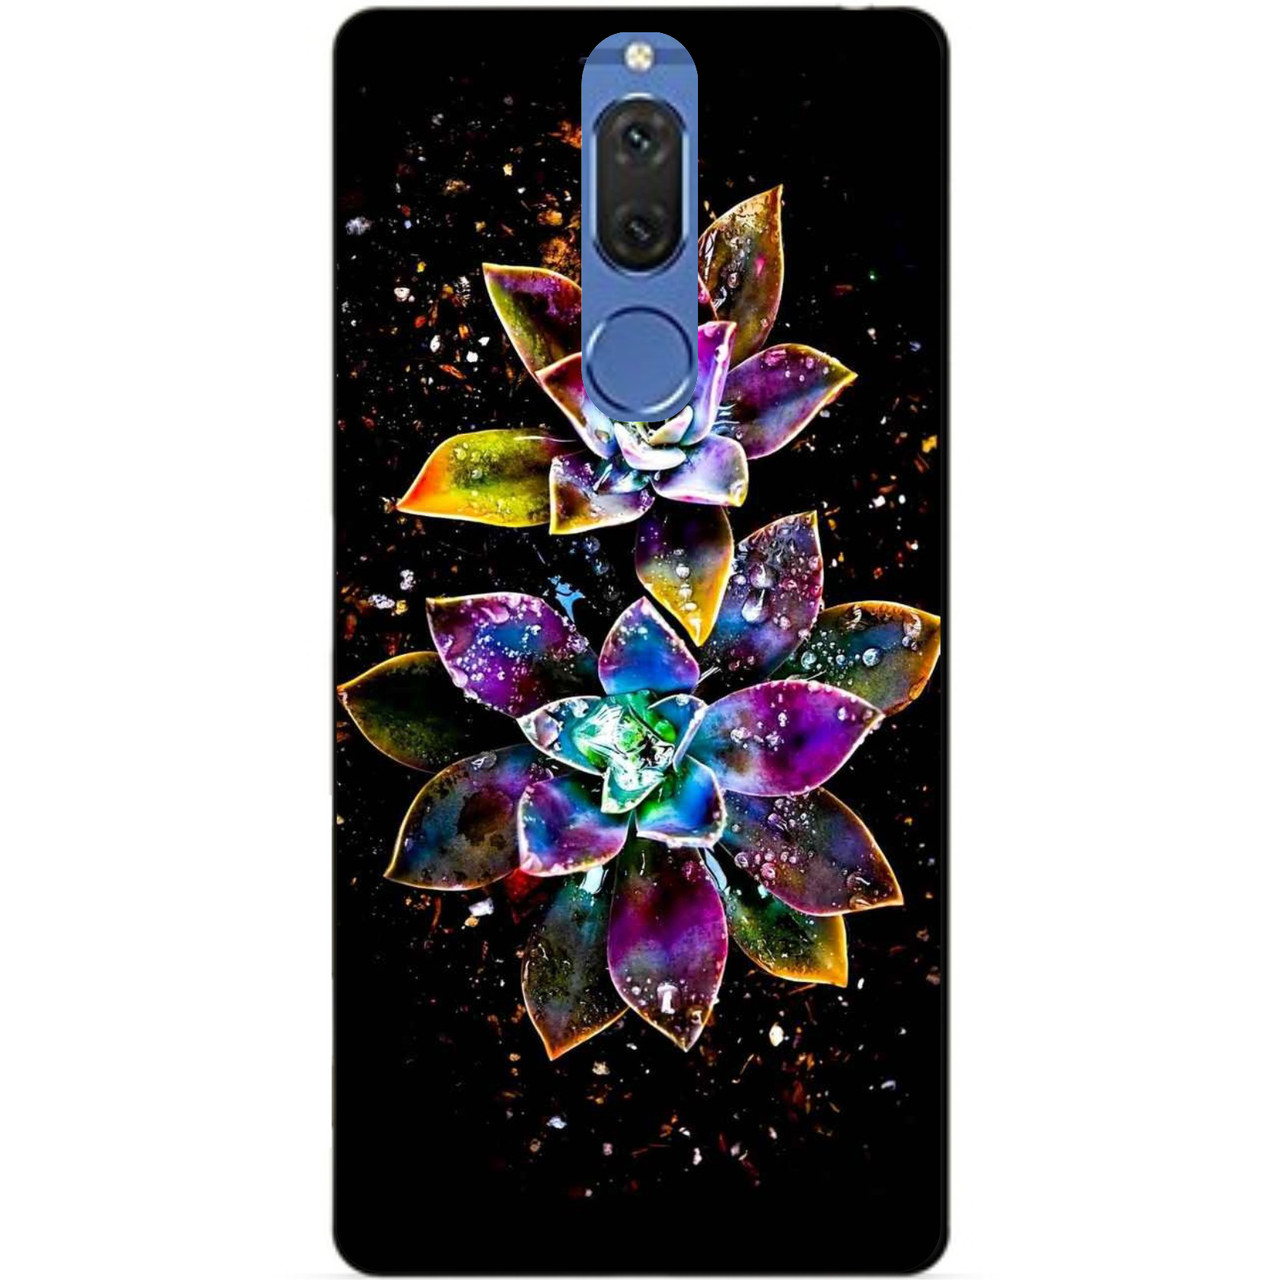 

Чехол силиконовый для Huawei Mate 10 Lite с рисунком Волшебные цветы, Разные цвета